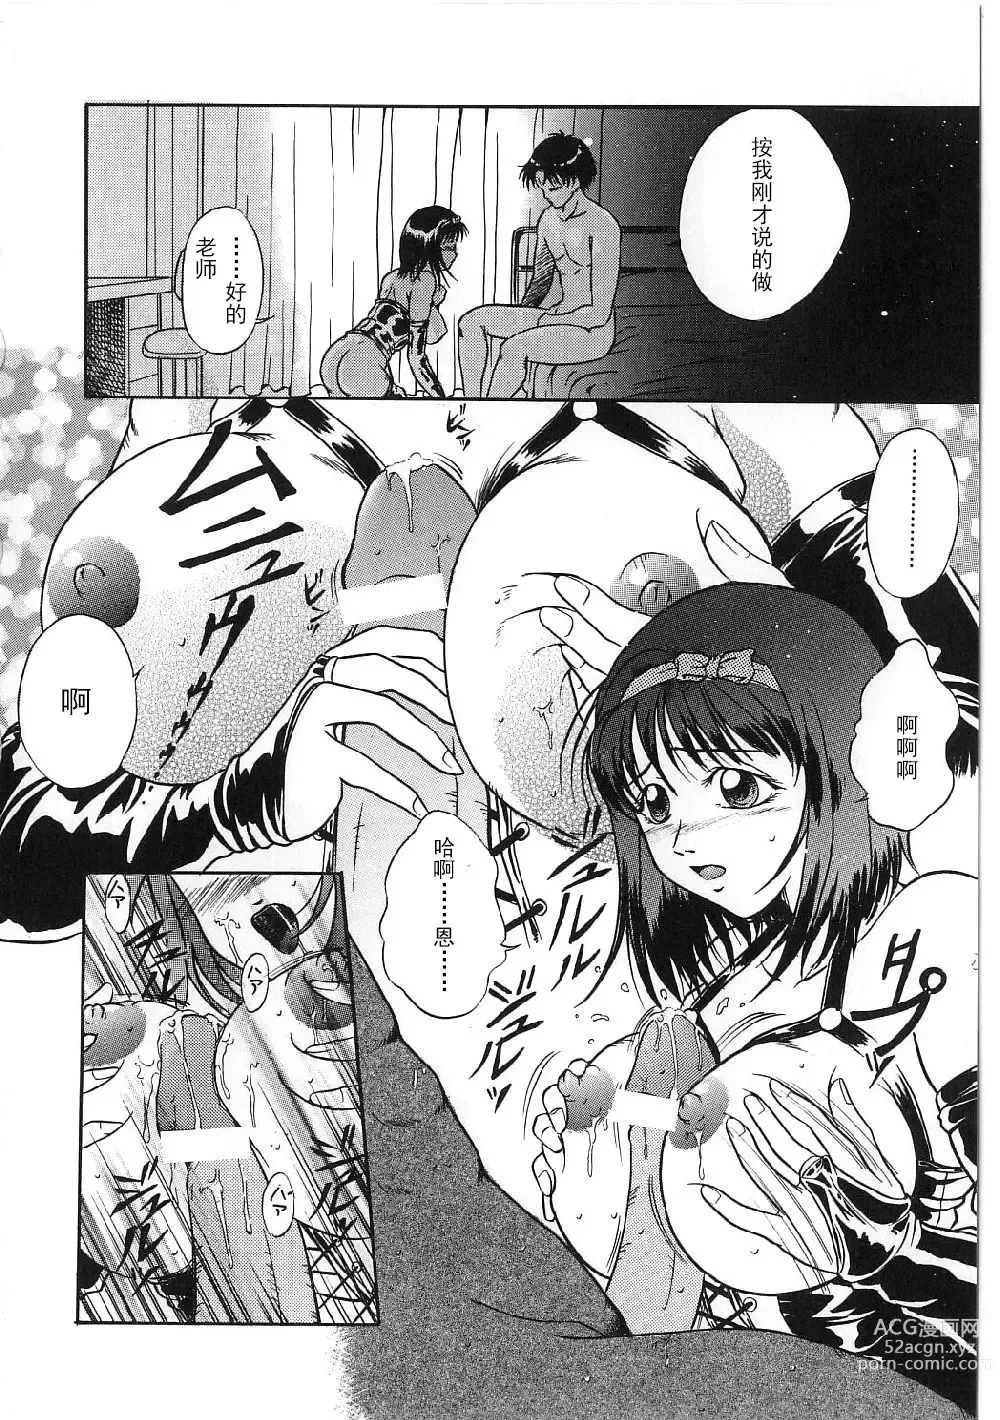 Page 12 of manga Kyonyuu Bondage